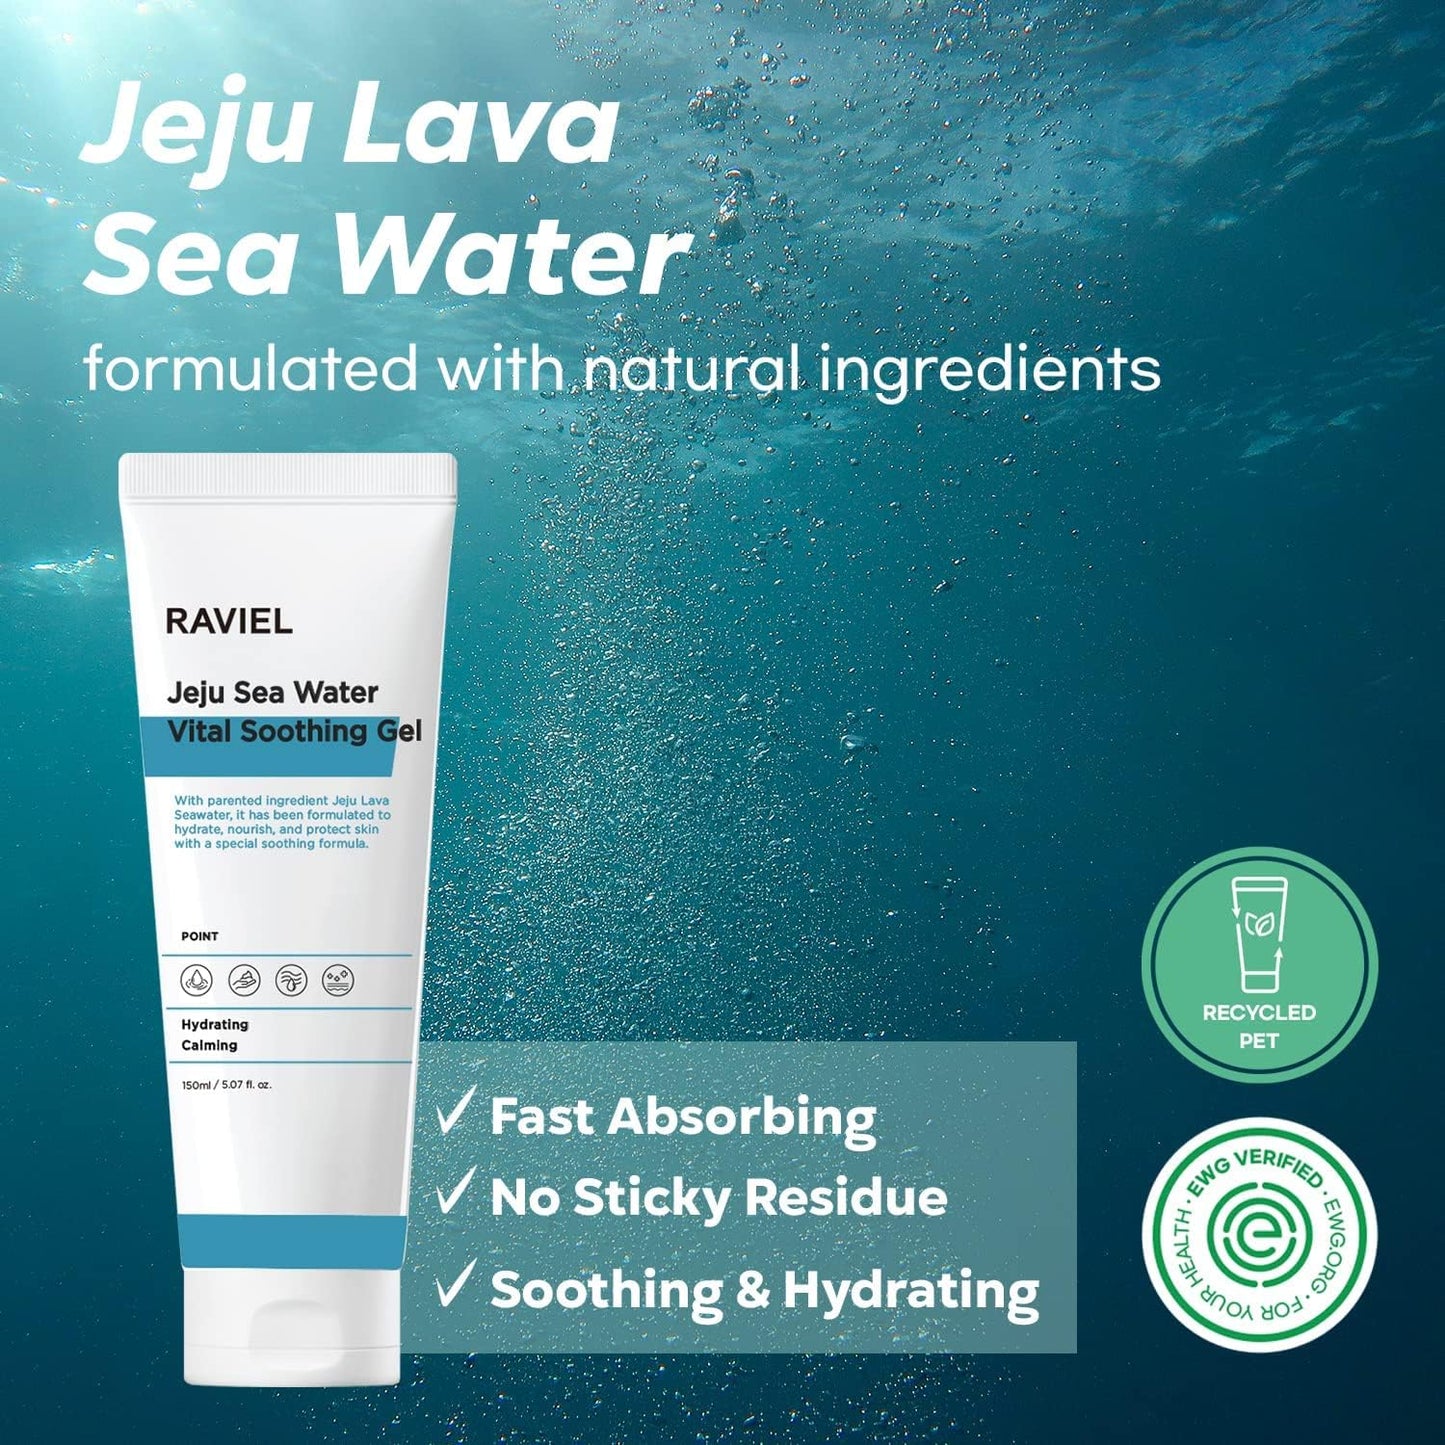 RAVIEL Jeju Lava Sea Water Vital Soothing Gel